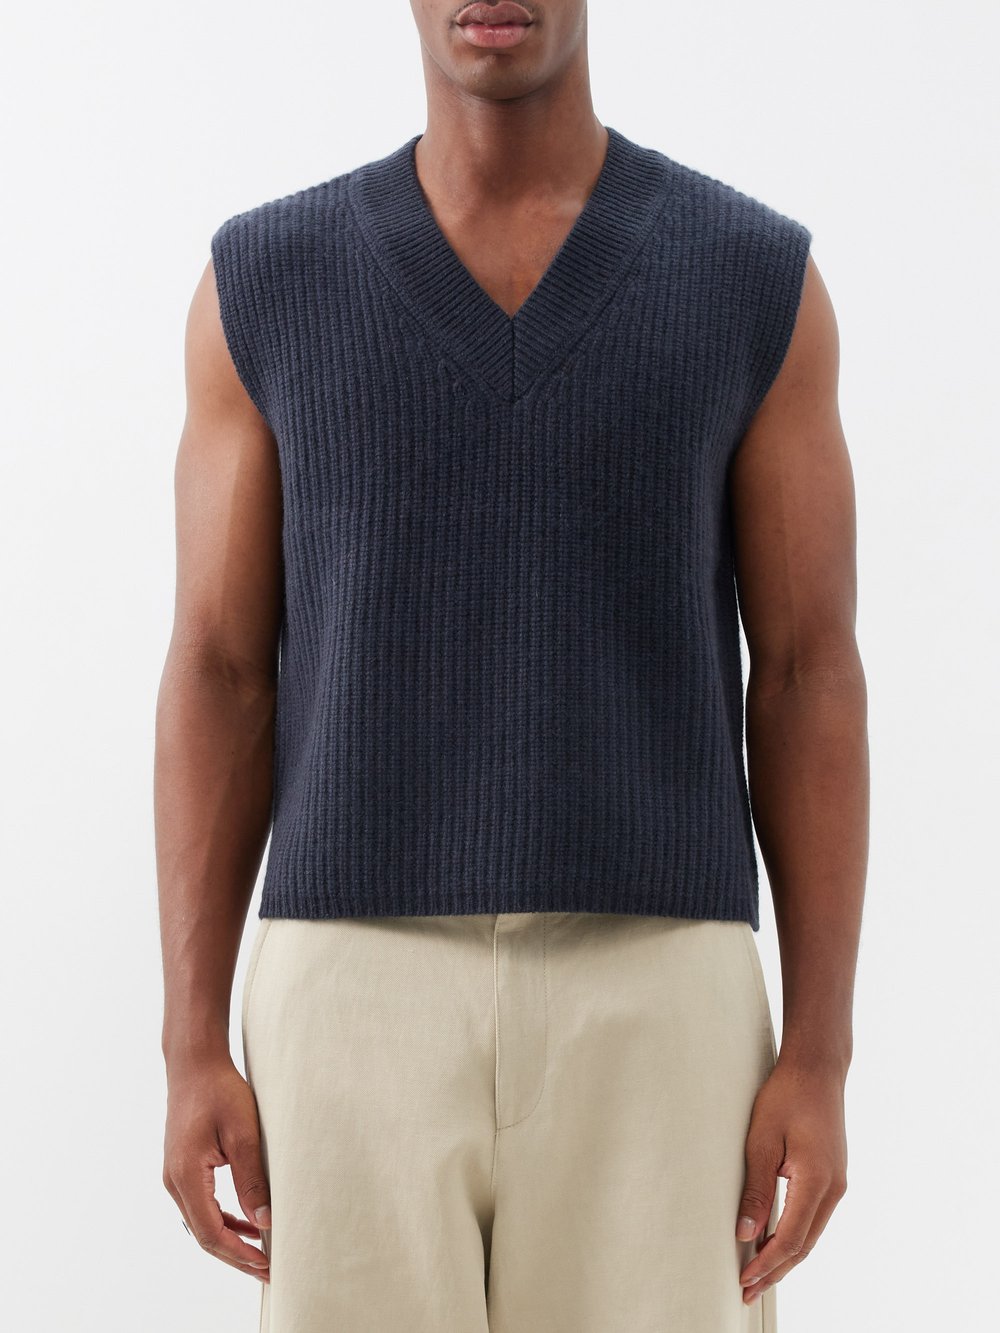 Кашемировый свитер-жилет mr southbank Arch4, серый